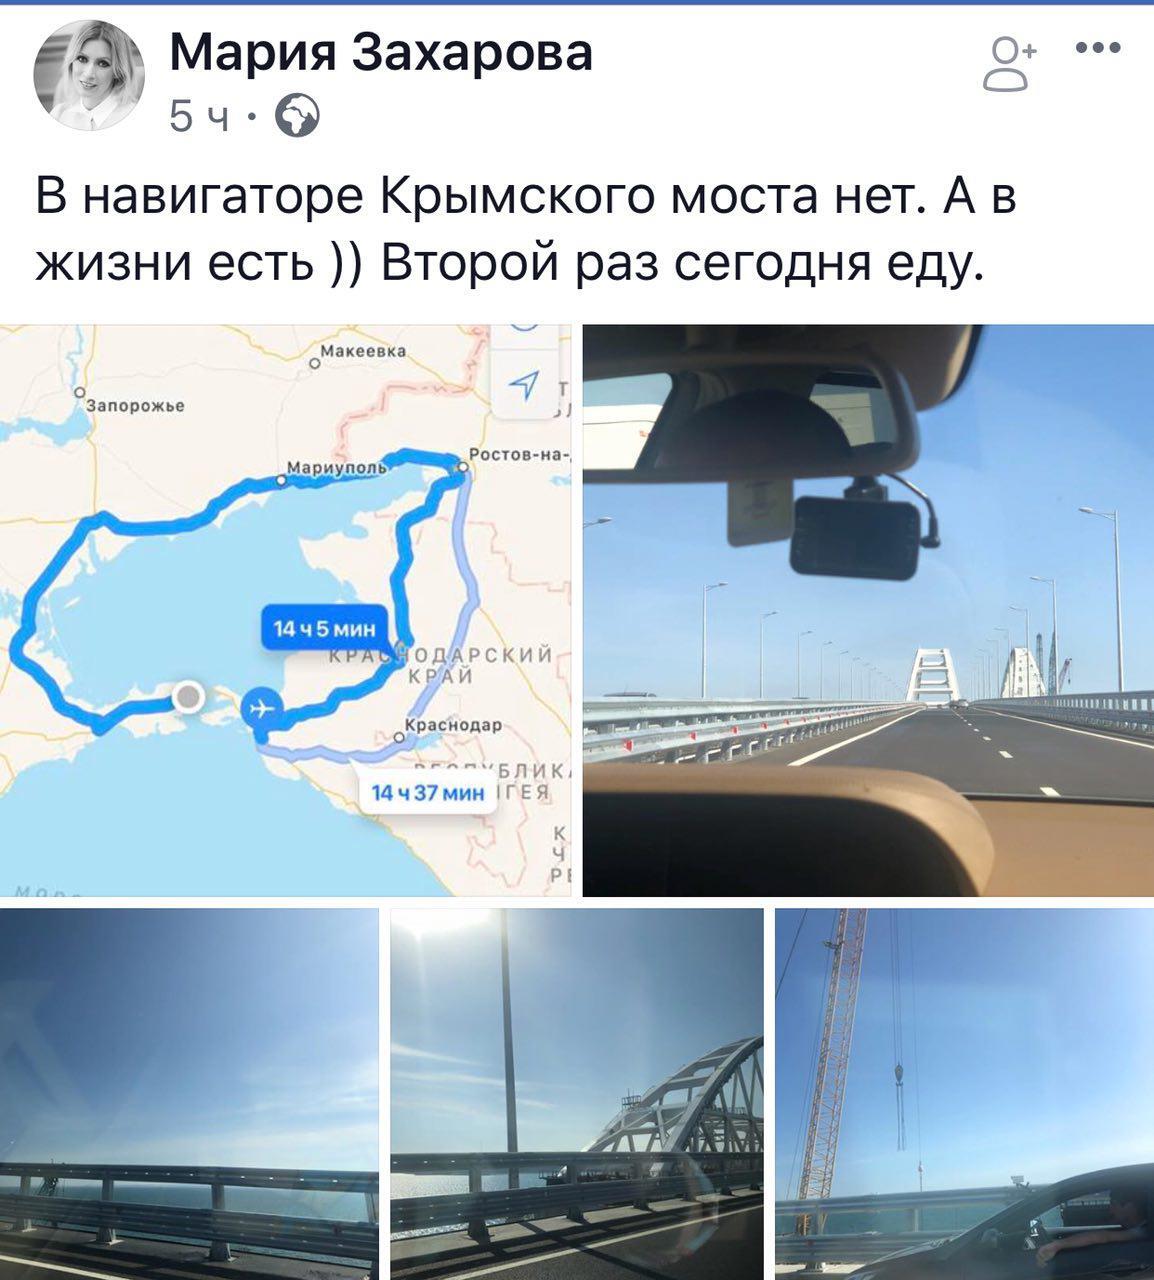 Кругом враги: у Захаровой началась паранойя на Крымском мосту